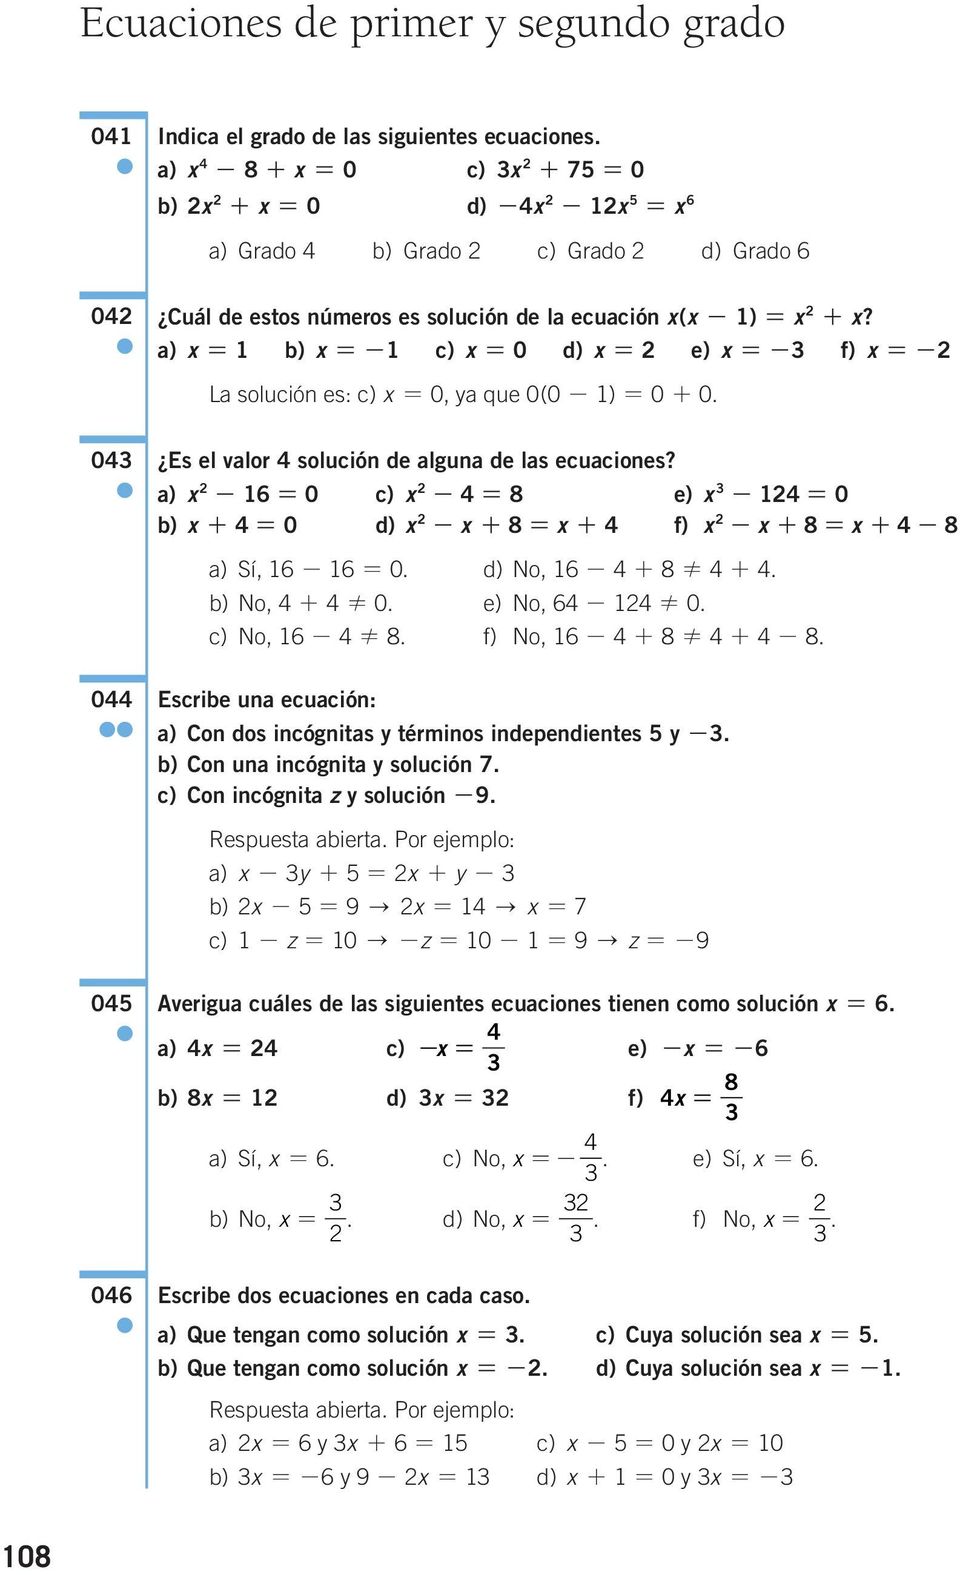 Es el valor solución de alguna de las ecuaciones? a) - 0 c) - 8 e) - 0 b) + 0 d) - + 8 + f) - + 8 + - 8 a) Sí, - 0. d) No, - + 8! +. b) No, +! 0. e) No, -! 0. c) No, -! 8. f) No, - + 8! + - 8. Escribe una ecuación: a) Con dos incógnitas y términos independientes y -.